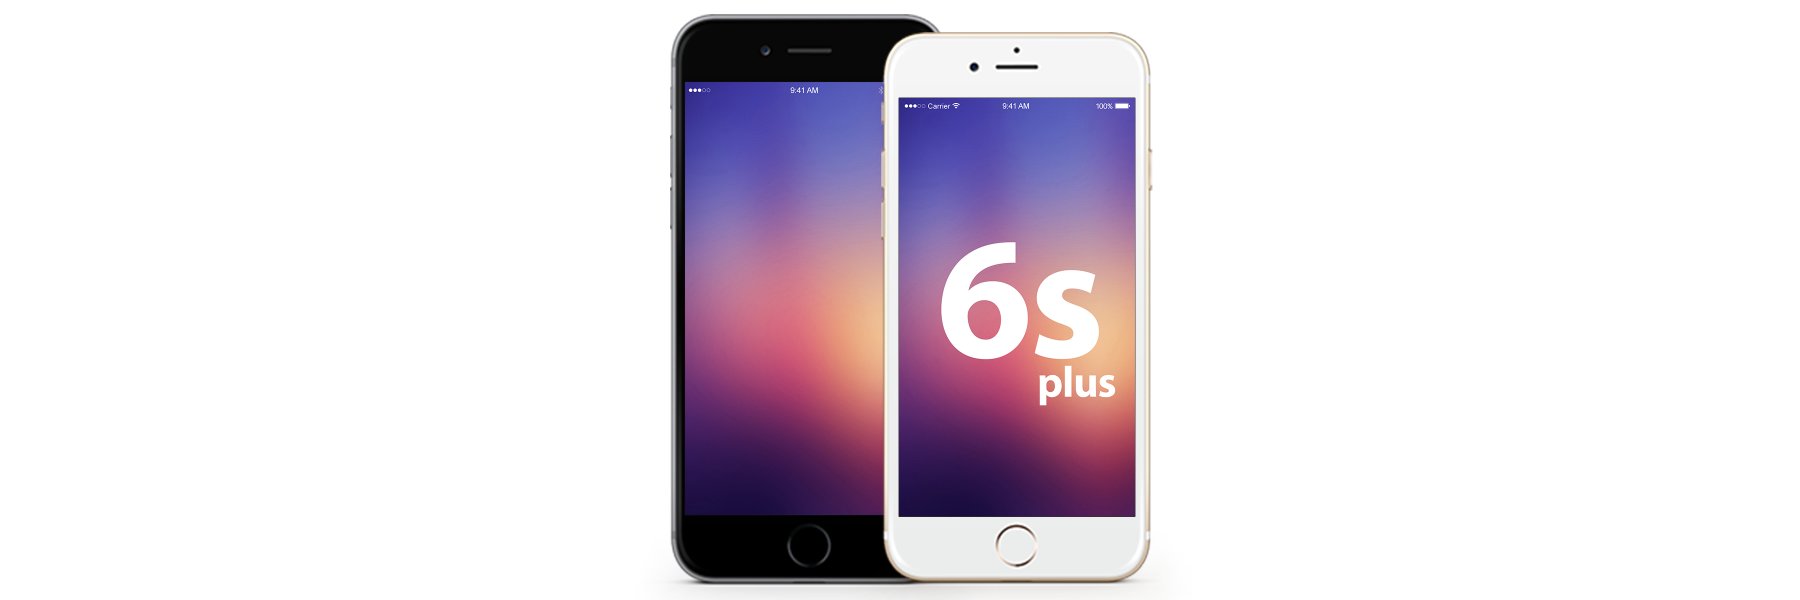 iPhone 6s Plus Displays